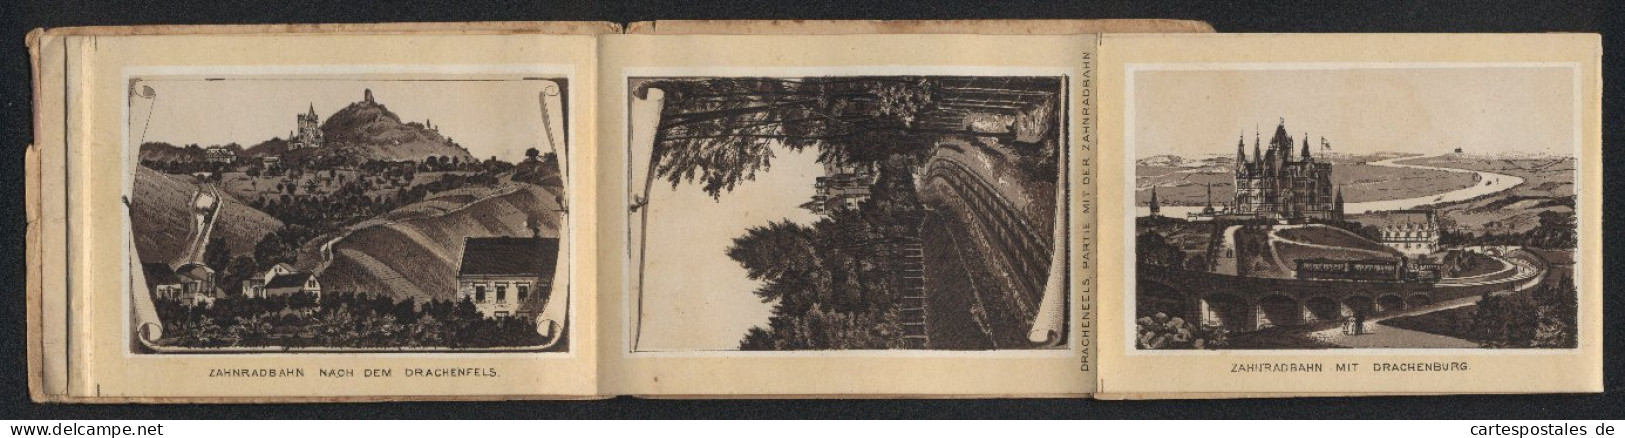 Leporello-Album Drachenfels Mit 12 Lithographie-Ansichten, Zahnradbahn Mit Drachenburg BahnhofRolandseck, Rolandsbogen  - Lithographien